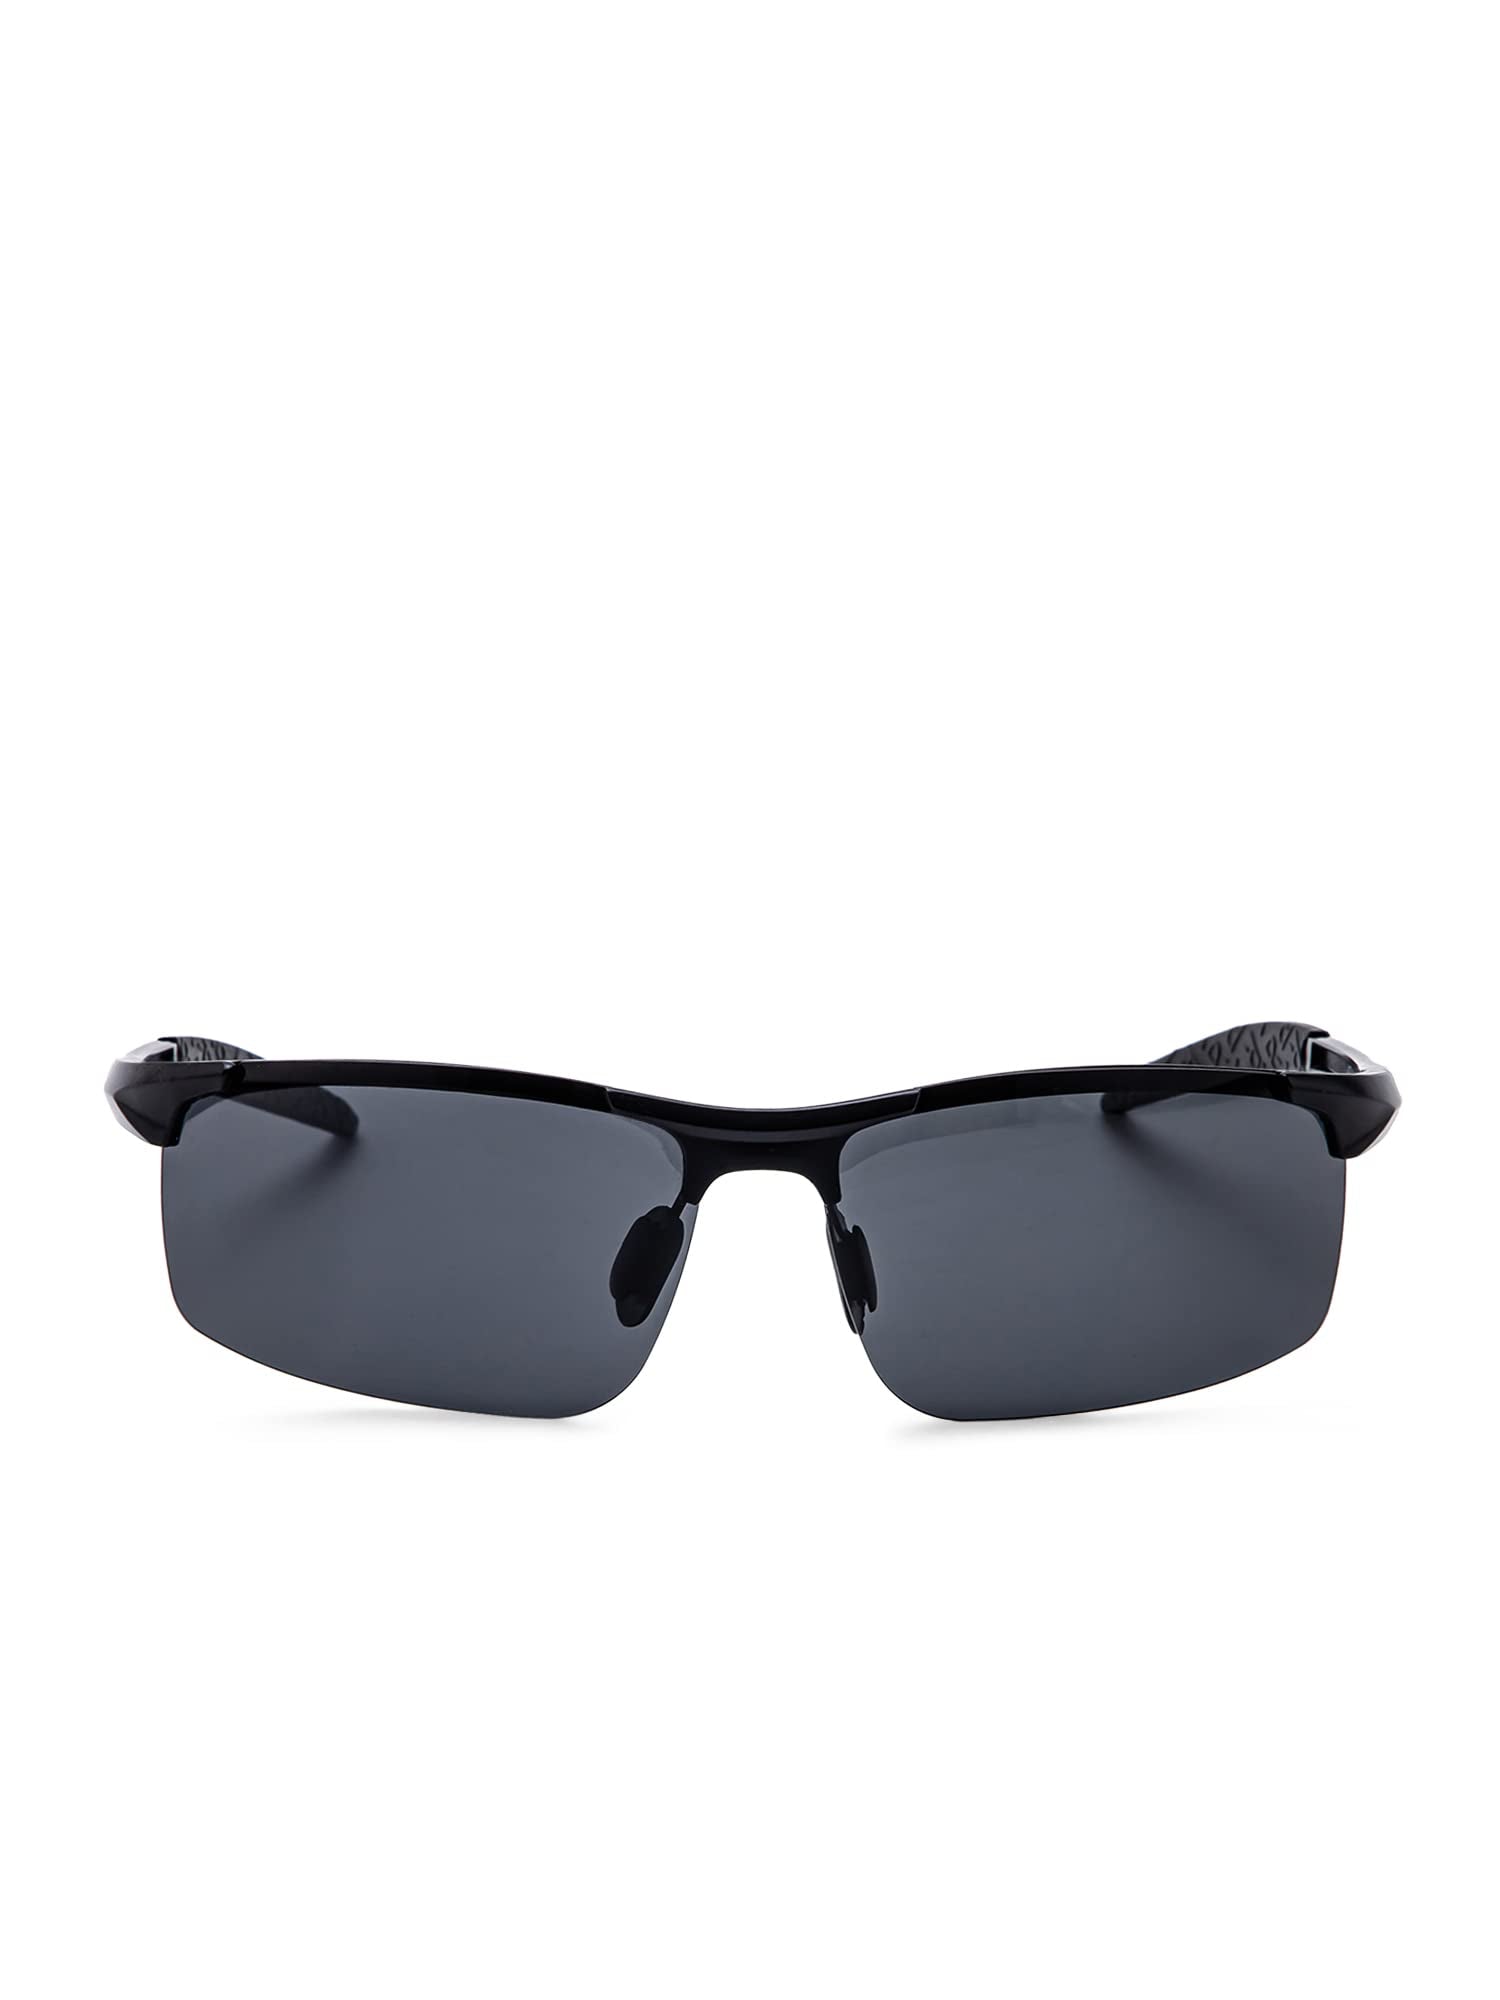 Intellilens Sporty Polarized & UV Protected Sunglasses For Men | Goggles for Men (Black) (64-16-120)